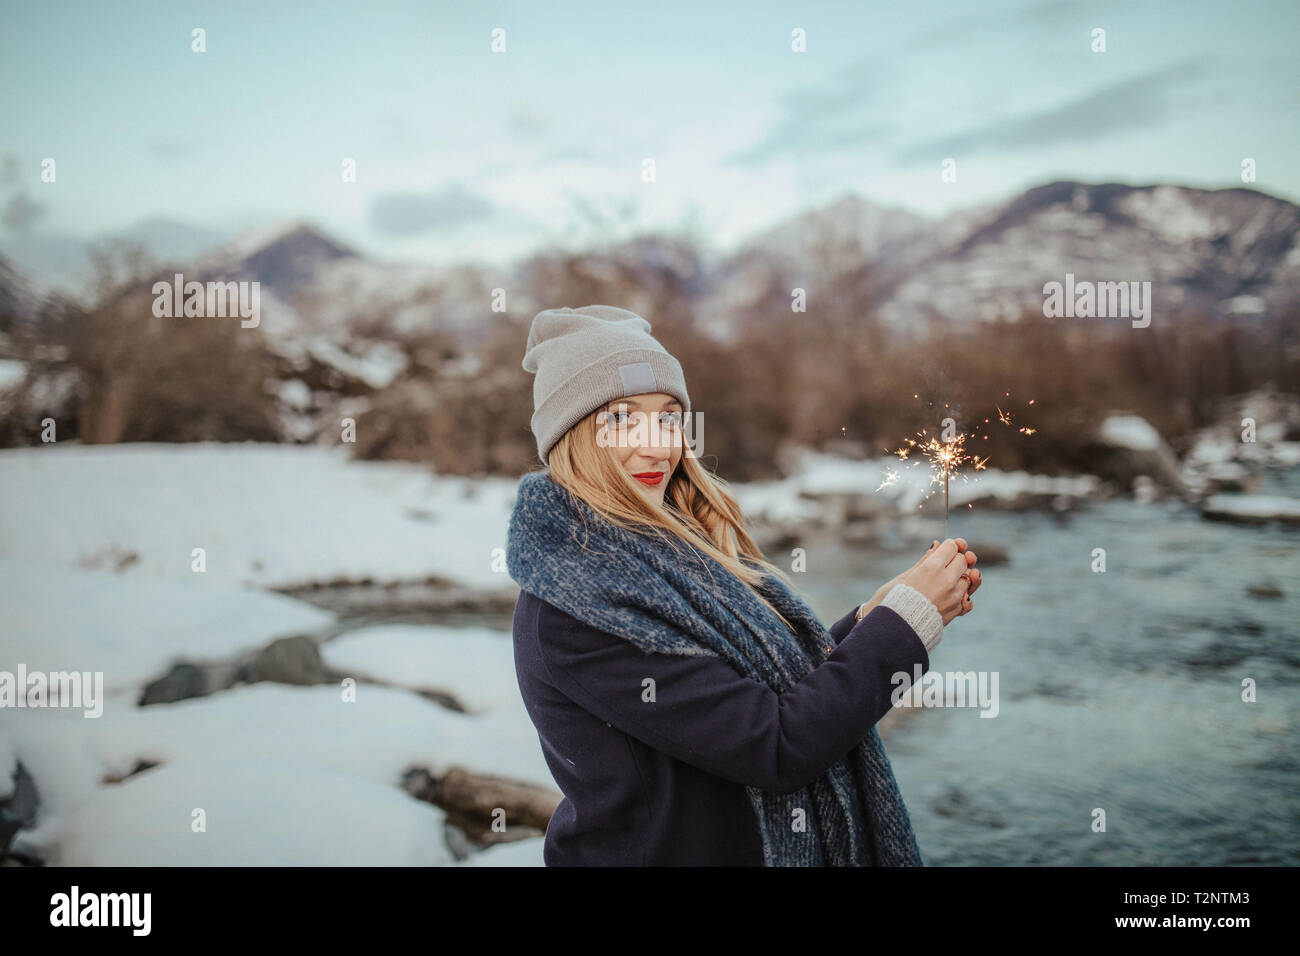 Frau in Strickmütze holding Wunderkerze auf schneebedeckten Riverbank, Porträt, Ortasee, Piemont, Italien Stockfoto